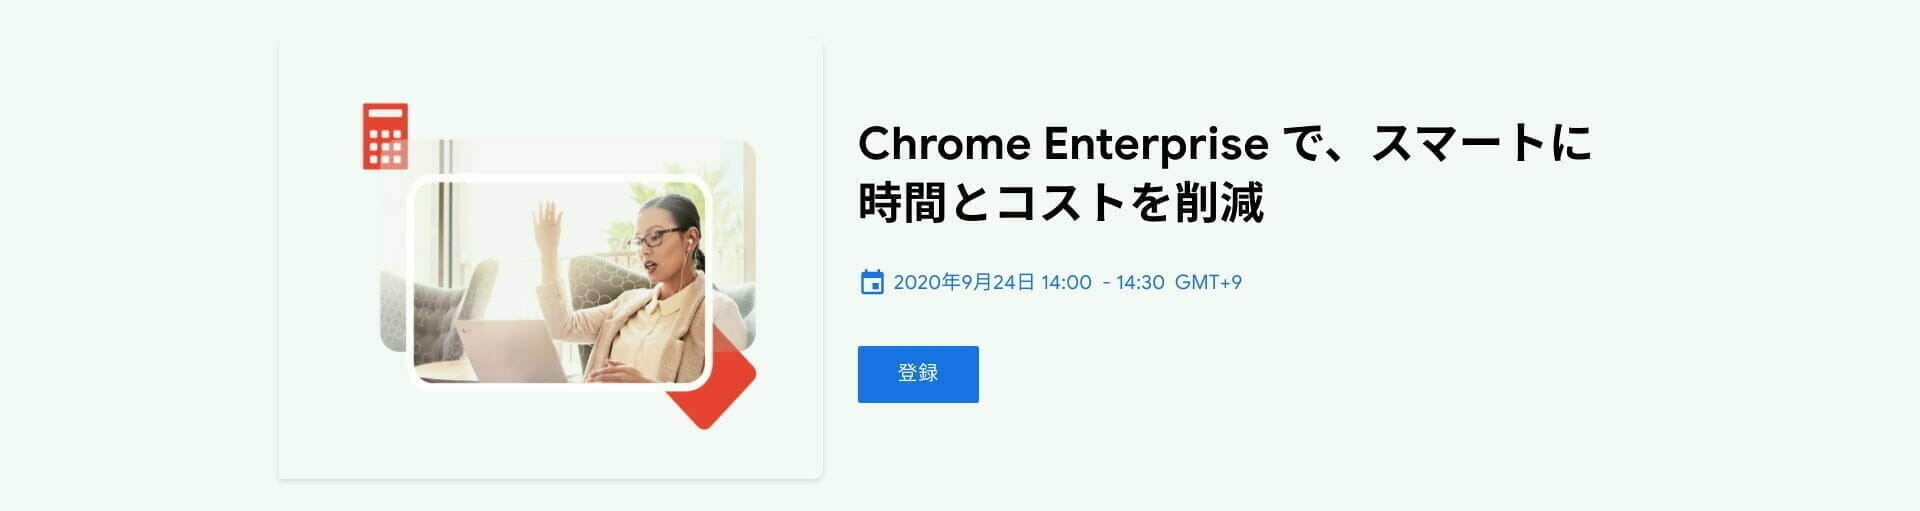 Chrome Enterprise で、スマートに時間とコストを削減